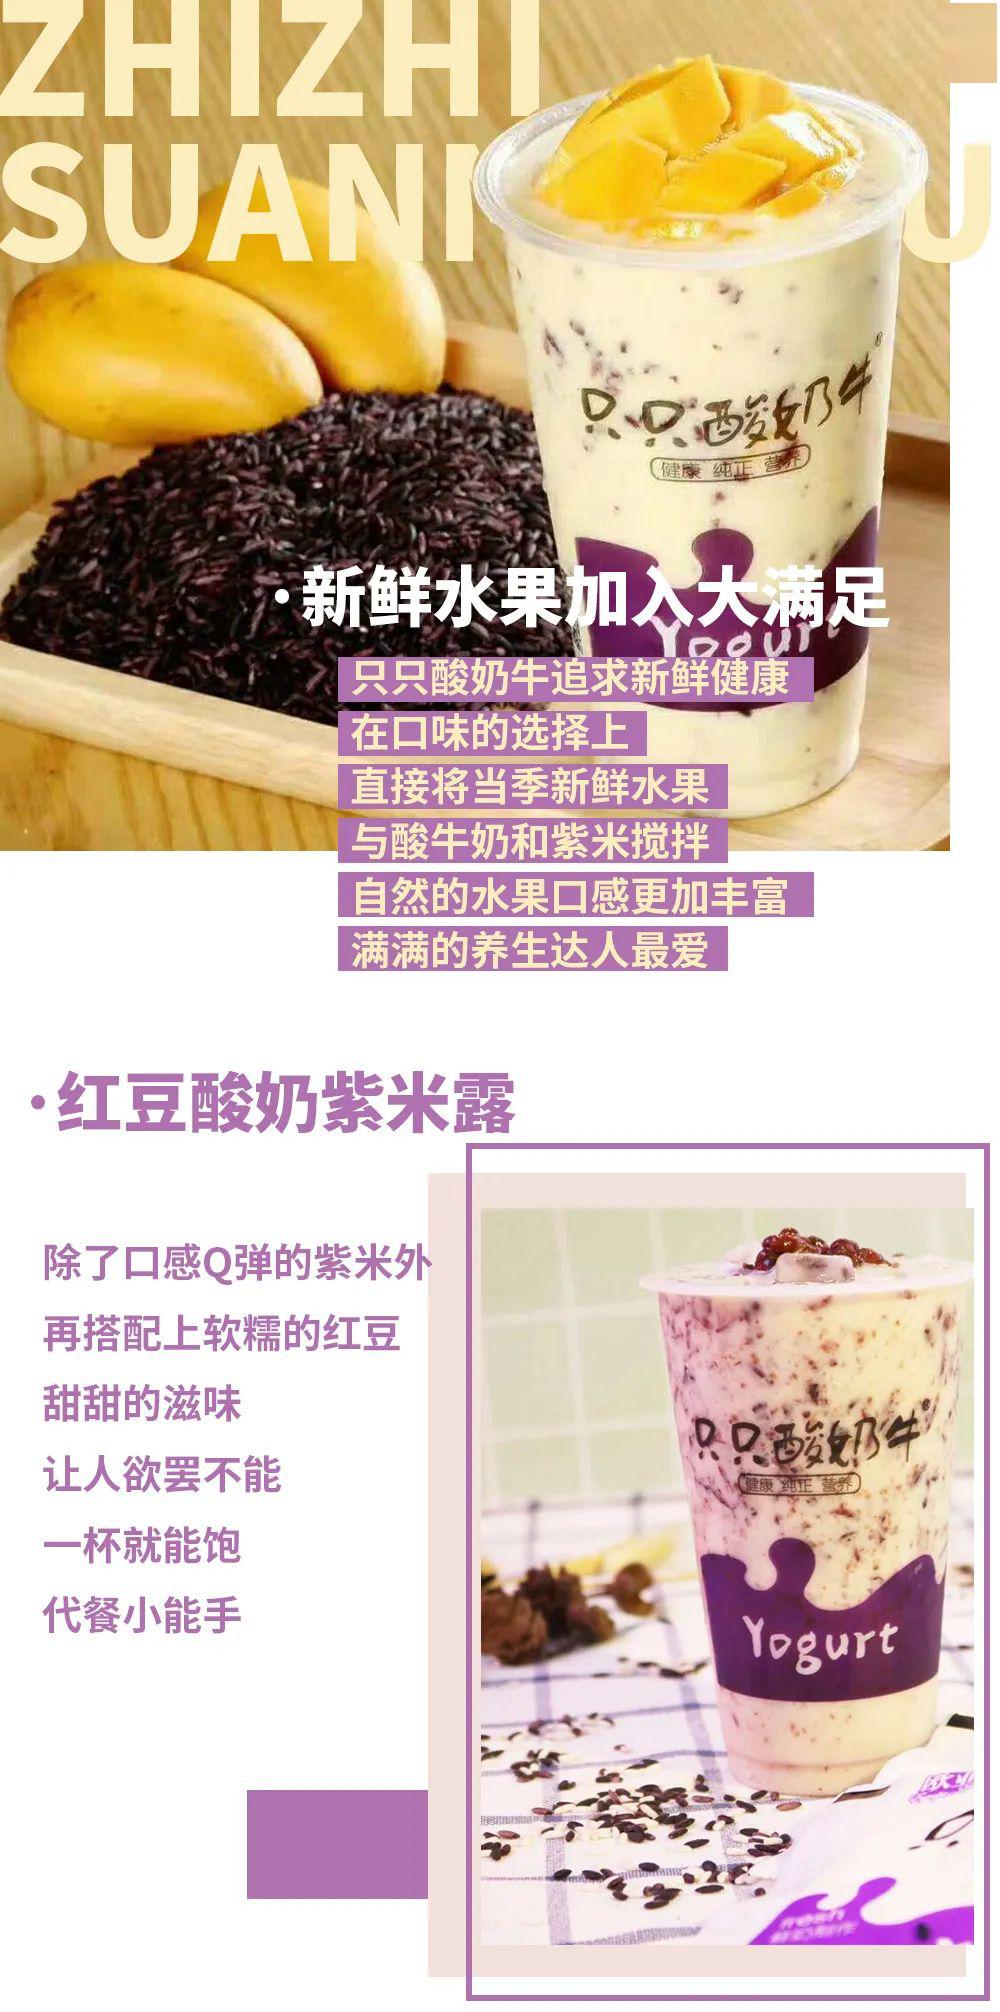 红心火龙果酸奶紫米露▼还有鲜奶系列可以尝尝蓝莓脏脏,蓝莓酱挂壁的